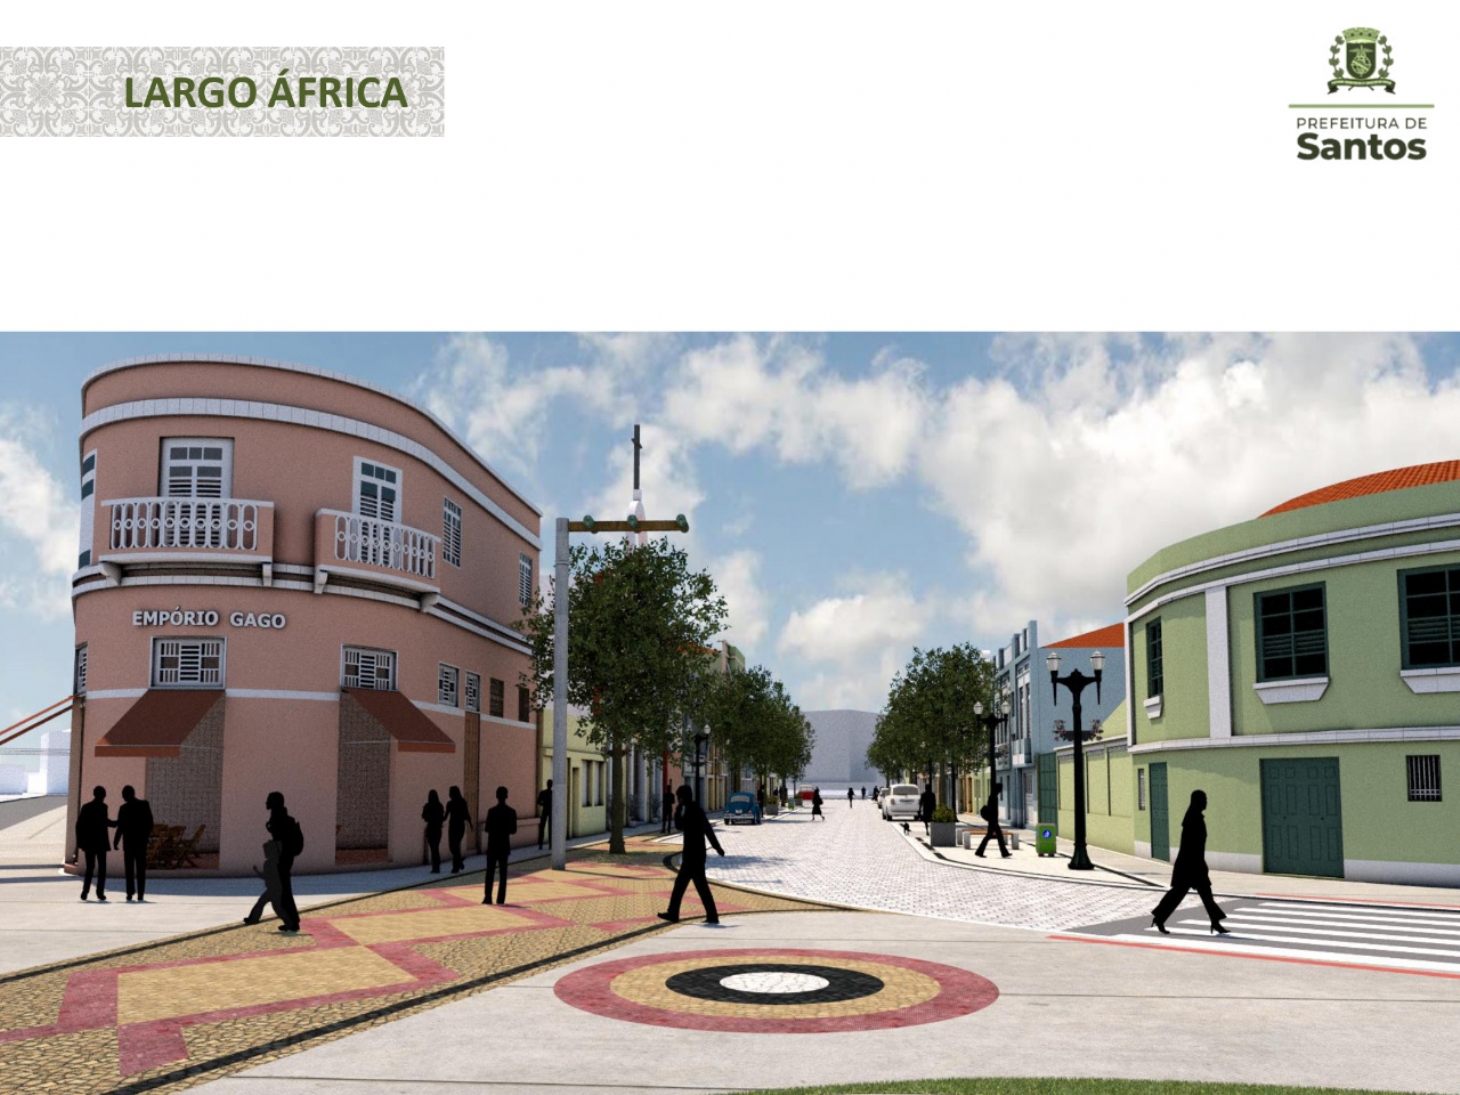 Projeto de revitalização de rua em Santos reforça culturas portuguesa e africana | Jornal da Orla